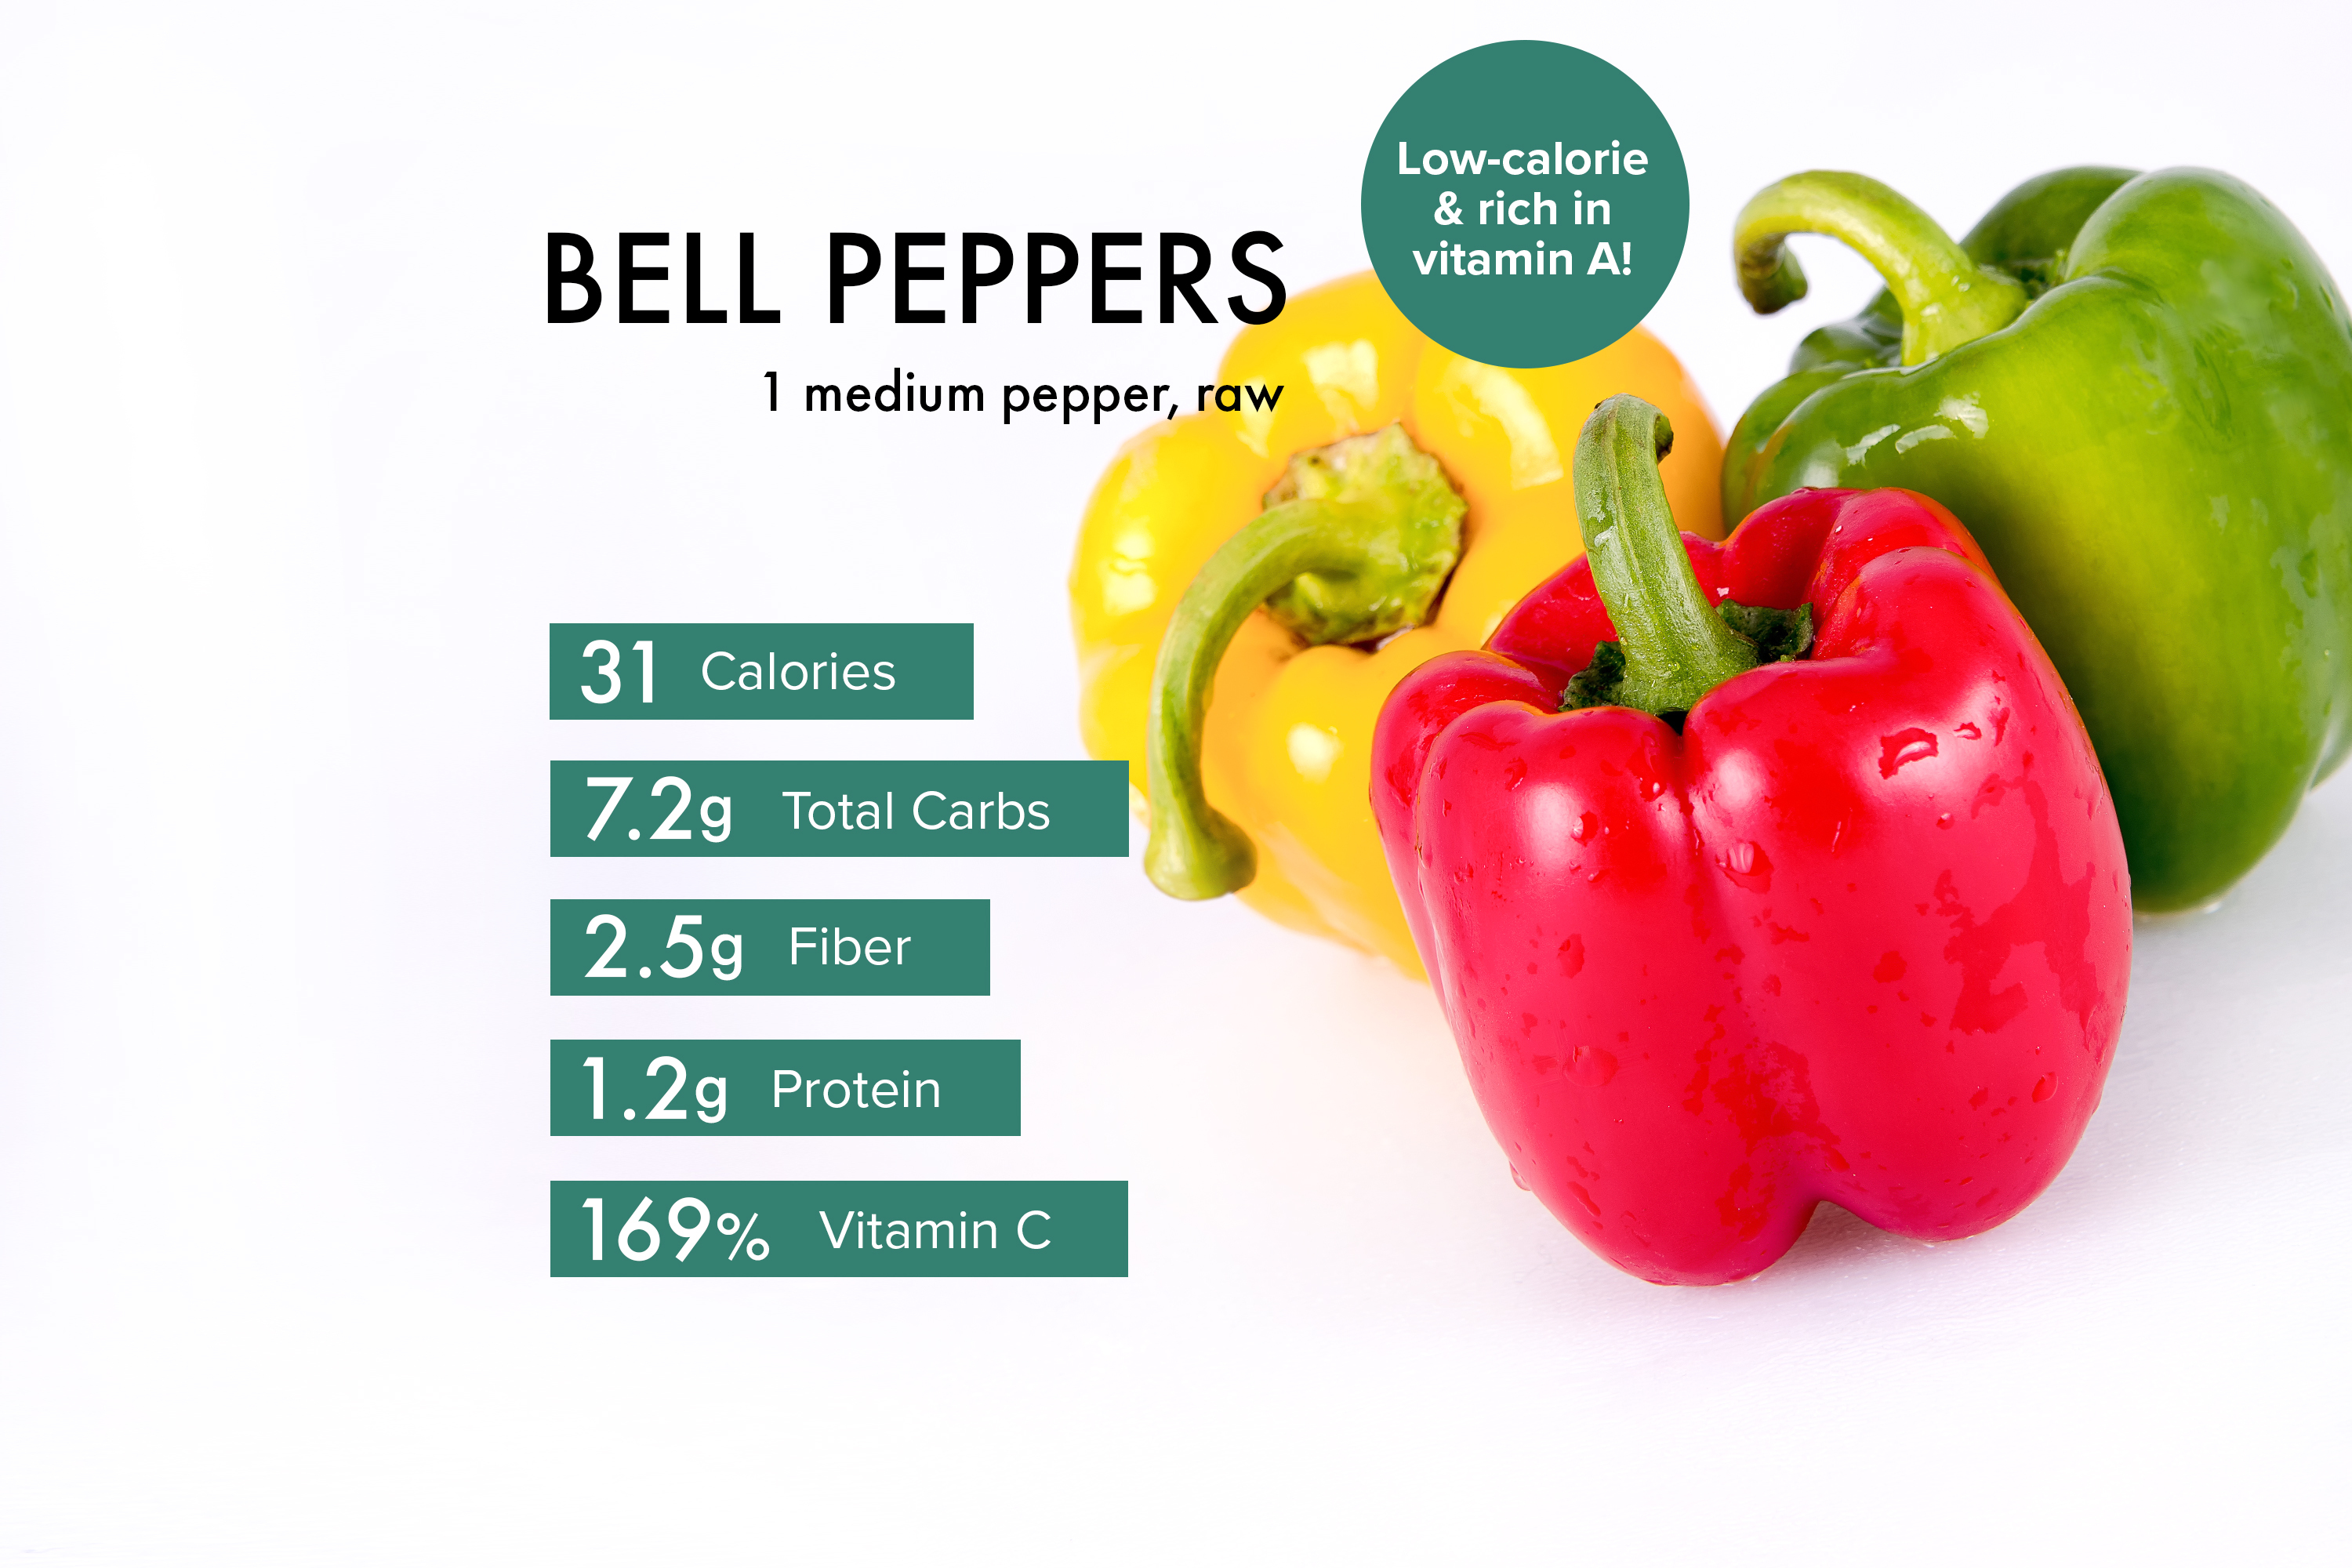 Fresh Red Bell Pepper